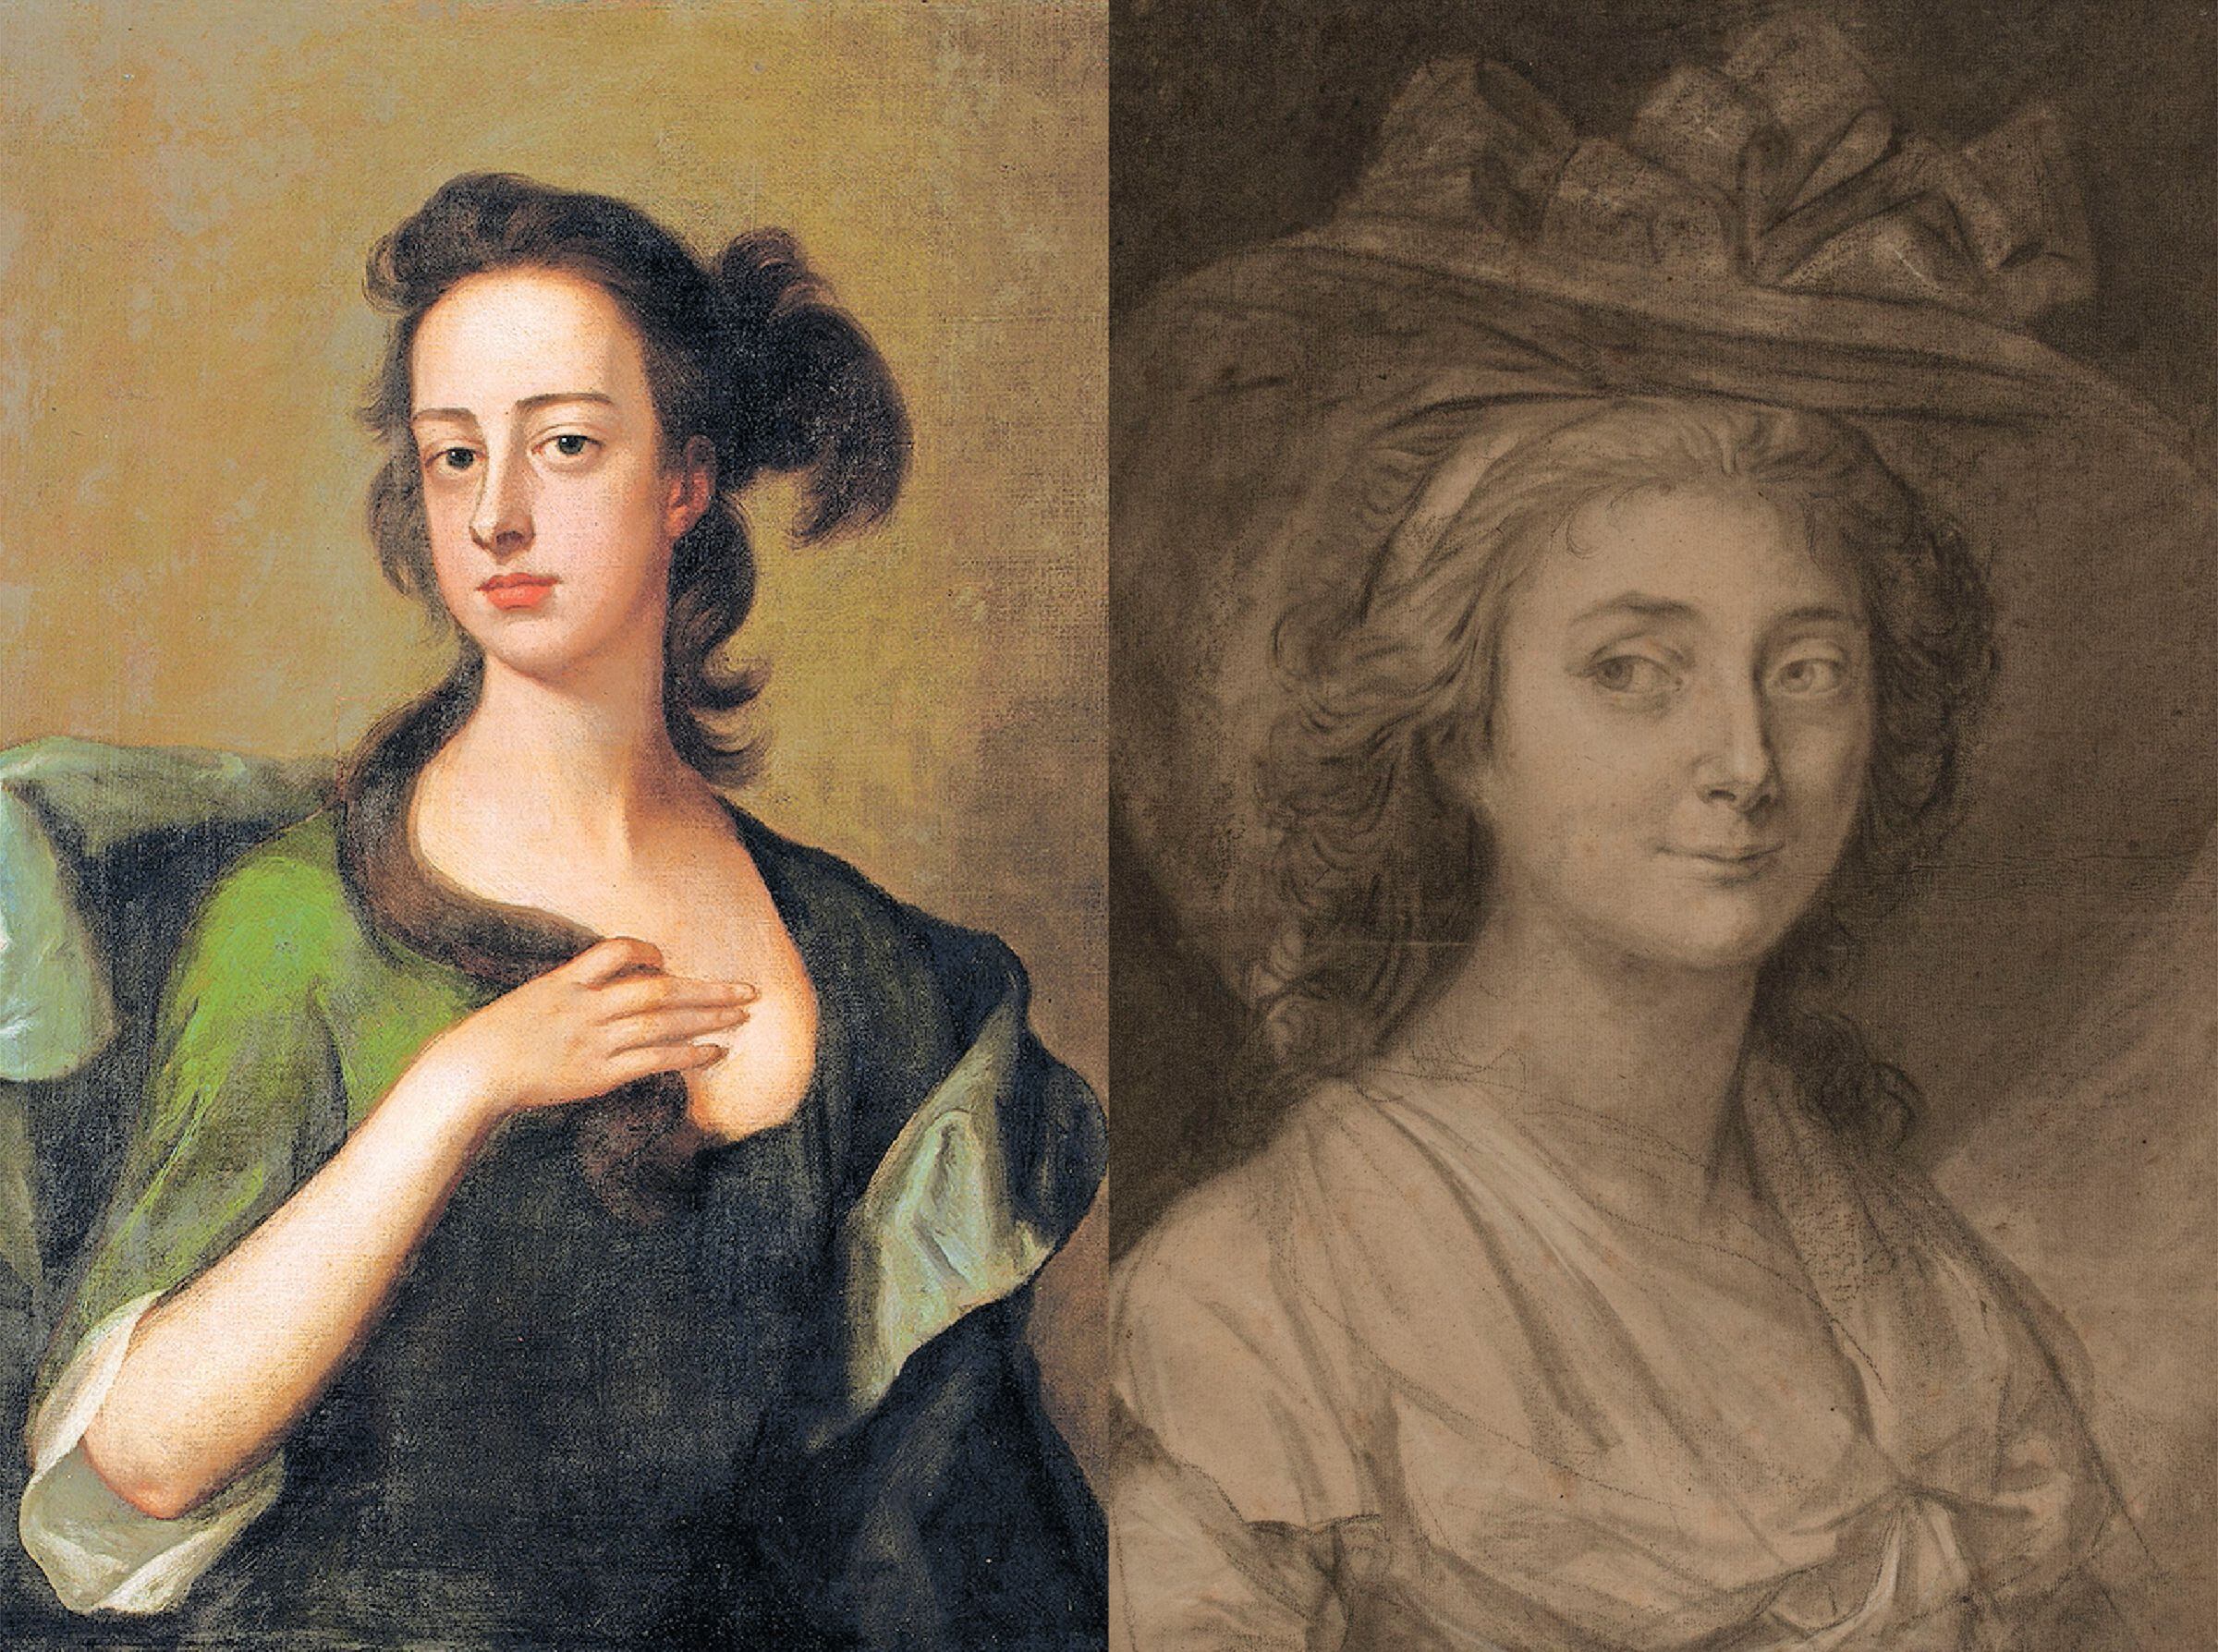 A la izquieda, Margaret Cavendish (Inglaterra, 1623-1673). Escribió 'Observations upon Experimental Philosophy'. A la derecha, Sophie de Grouchy (Francia, 1764-1822). Defendió que la igualdad natural debía reflejarse en la política. 